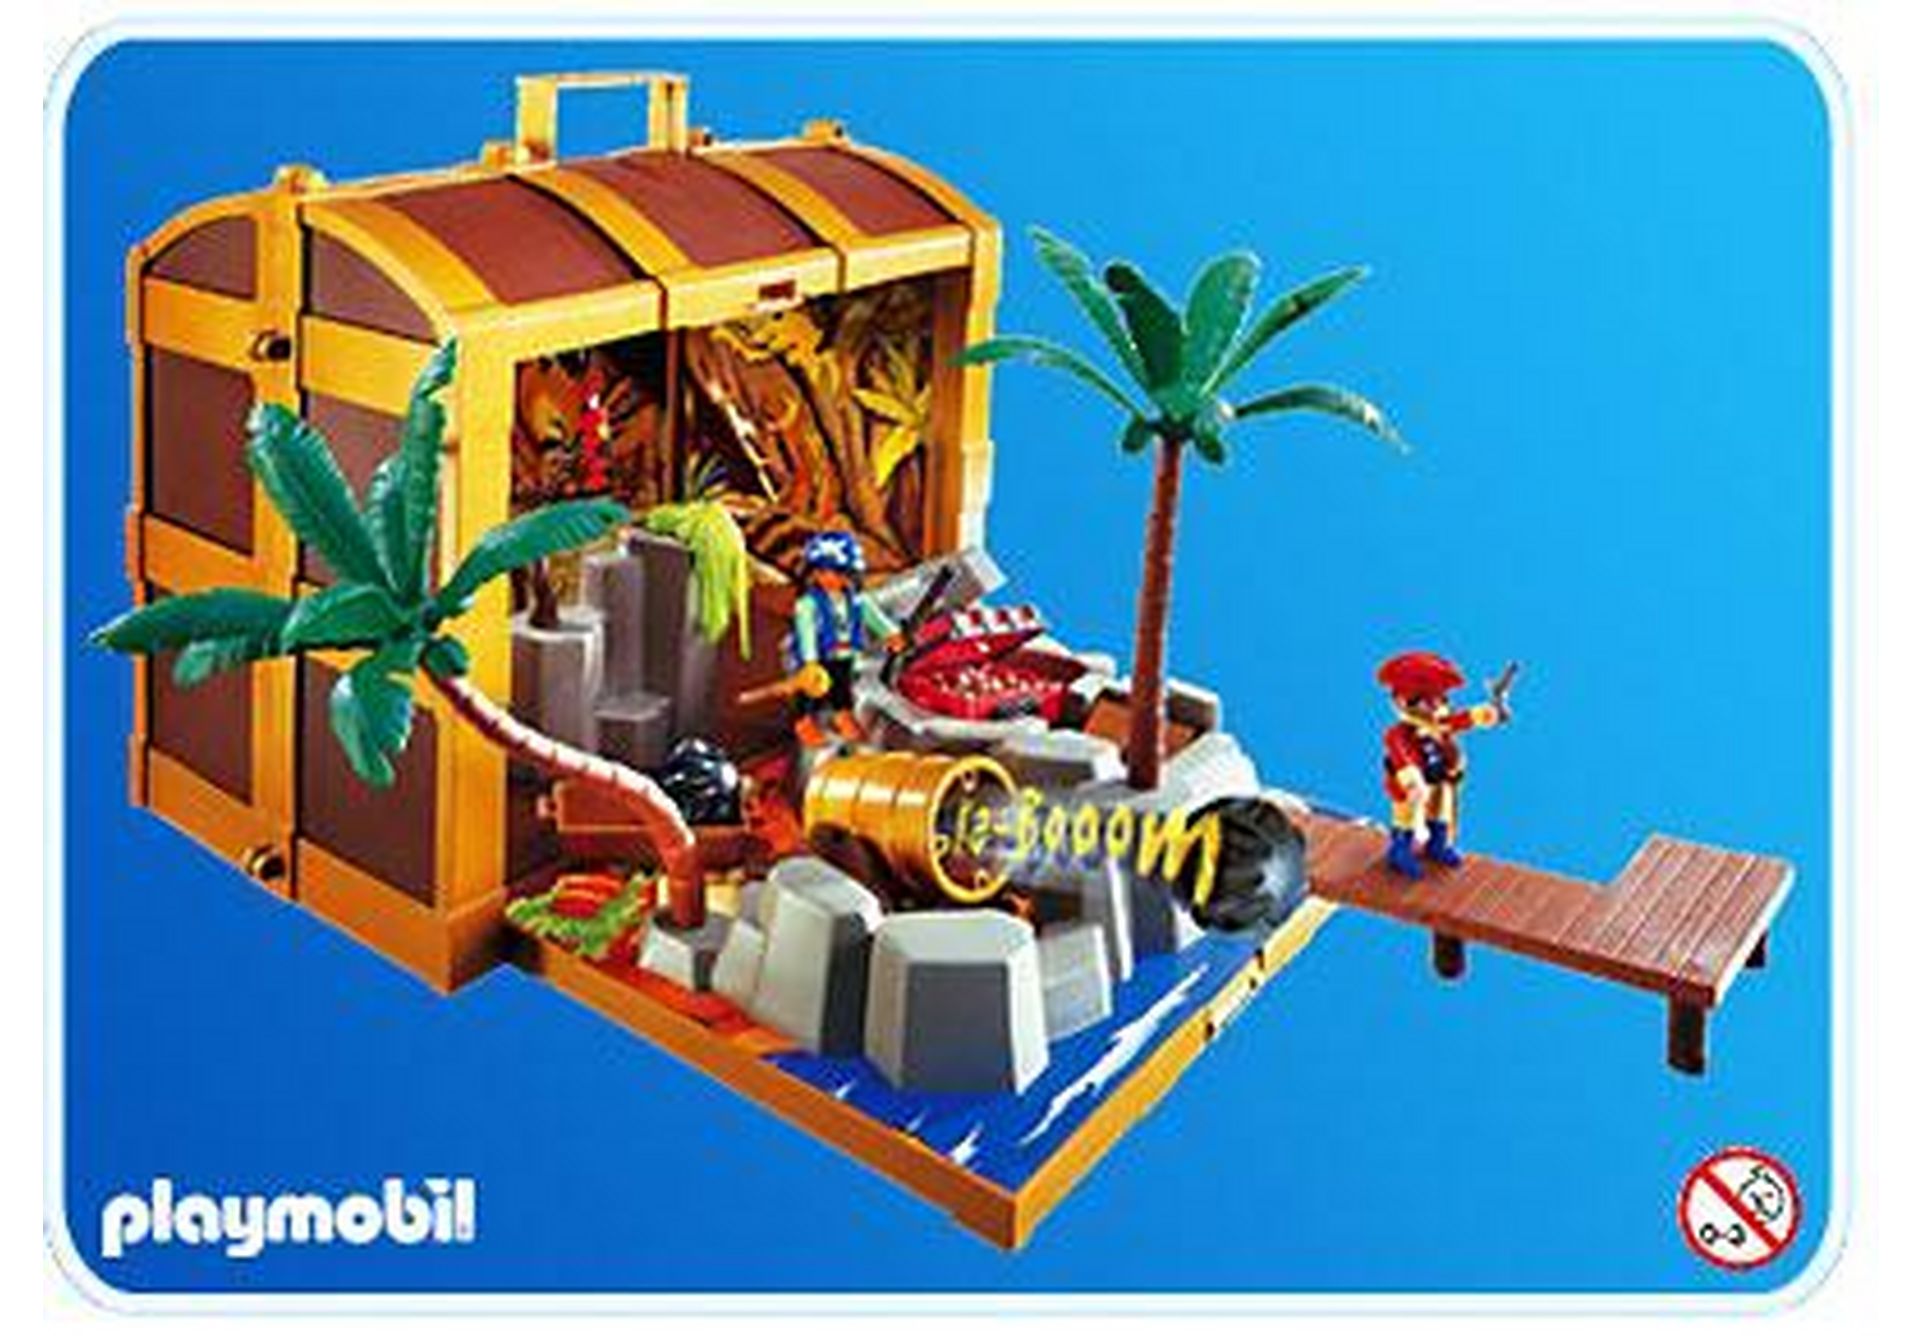 Playmobil EDELE SCHATZKISTE PRUNKVOLL SCHATZTRUHE Piratenschiff Pirateninsel*830 